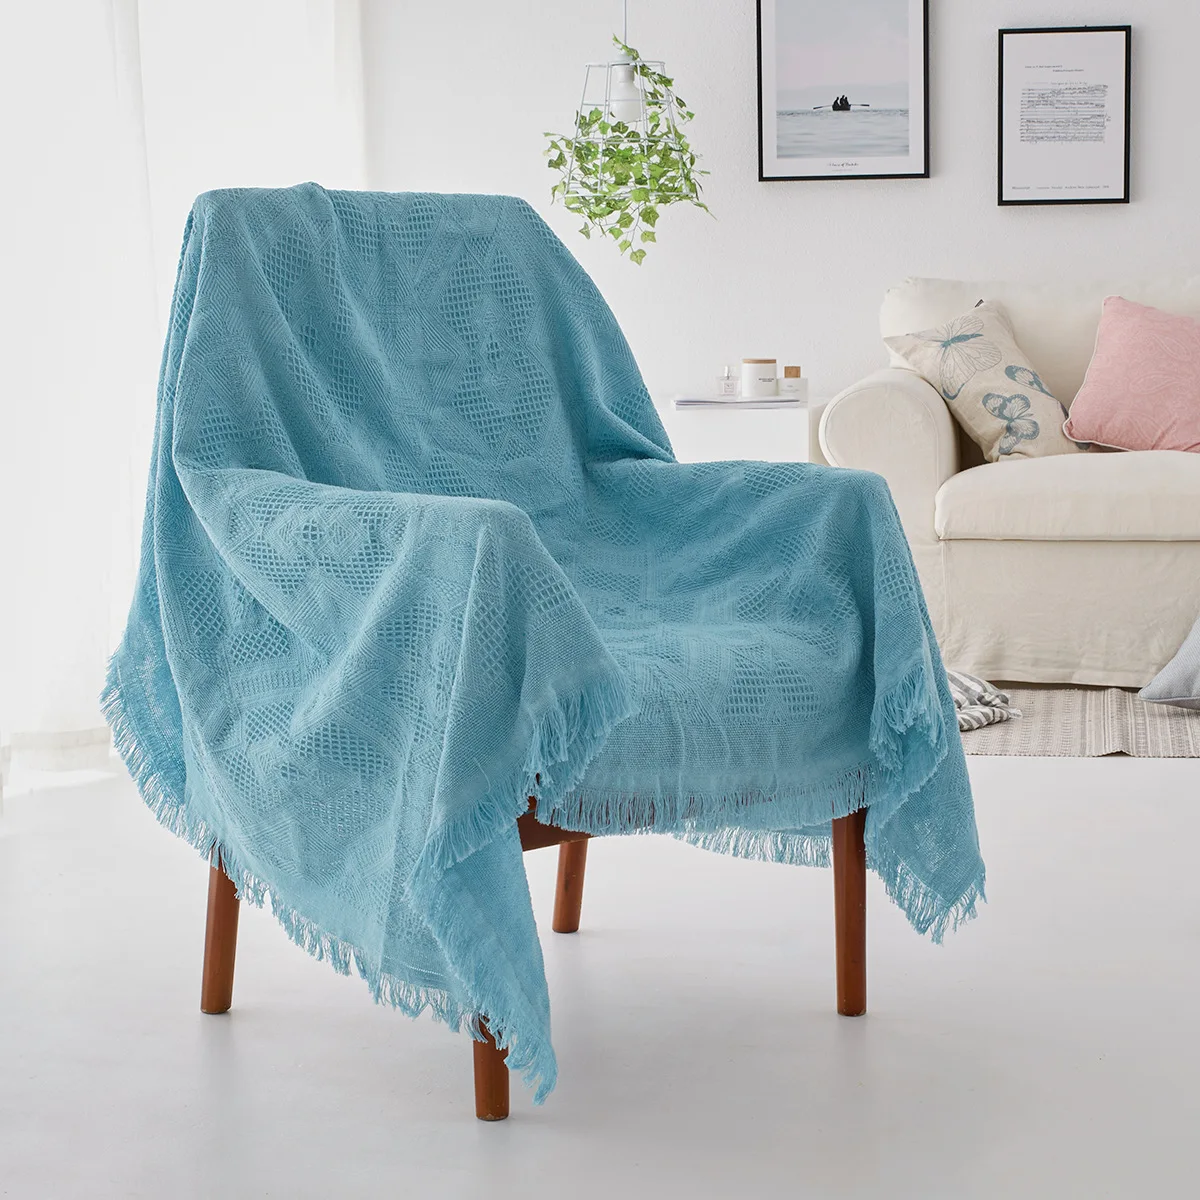 Yaapeet Soild Цвет диван полотенце покрывала для дивана стрейч для диван в гостиной крышка кресло угловой чехол на диван Slipovers